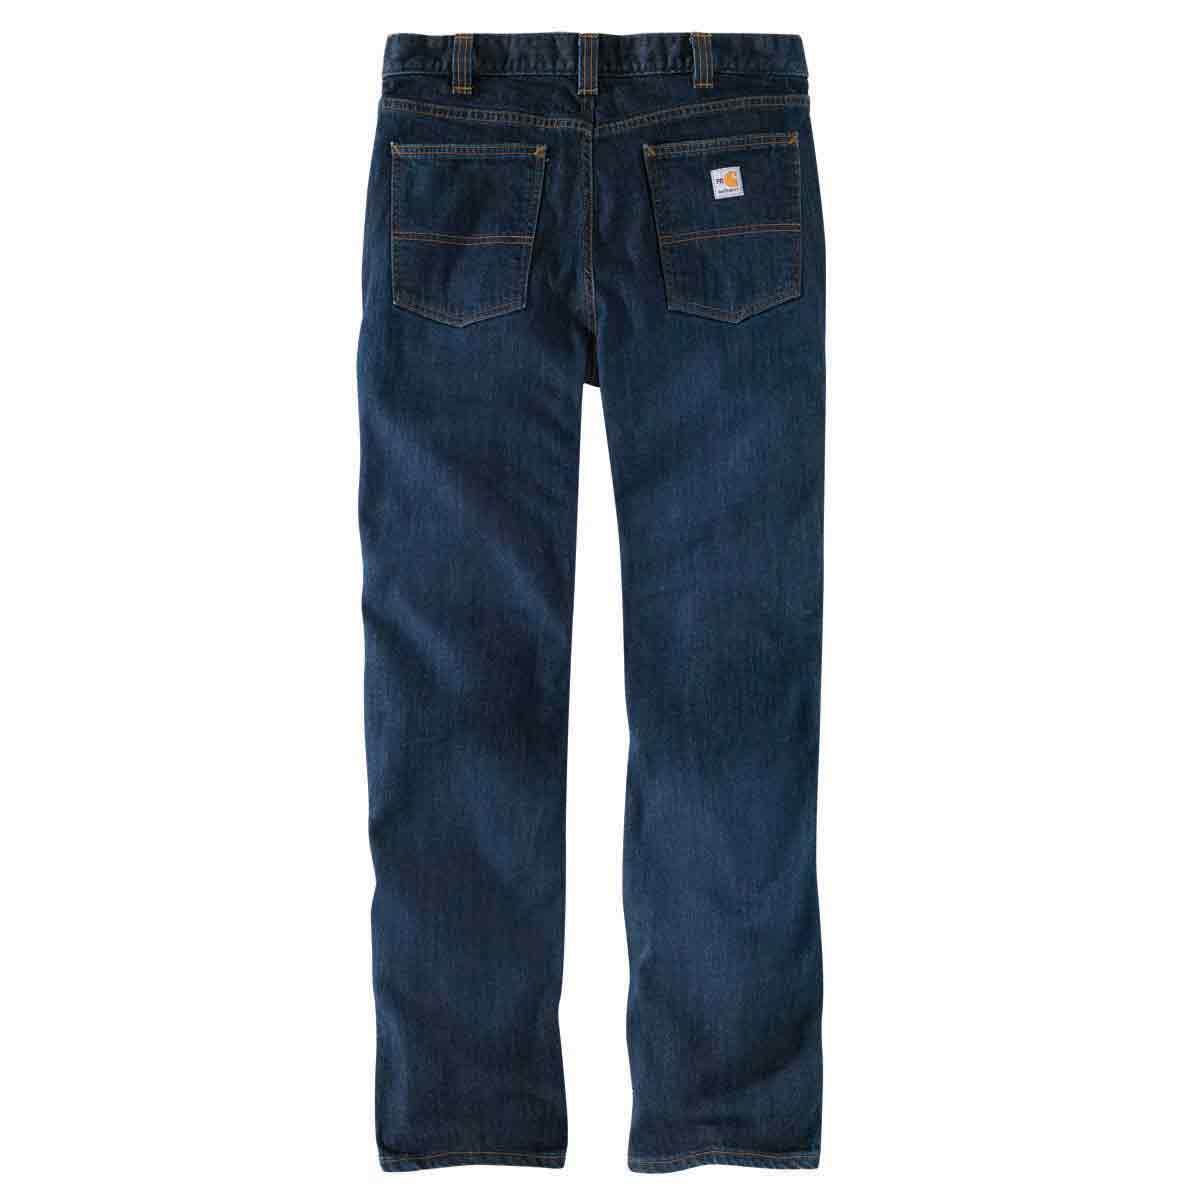 Carhartt Men's FR Rugged Flex 5 Pocket Jean Straight Fit